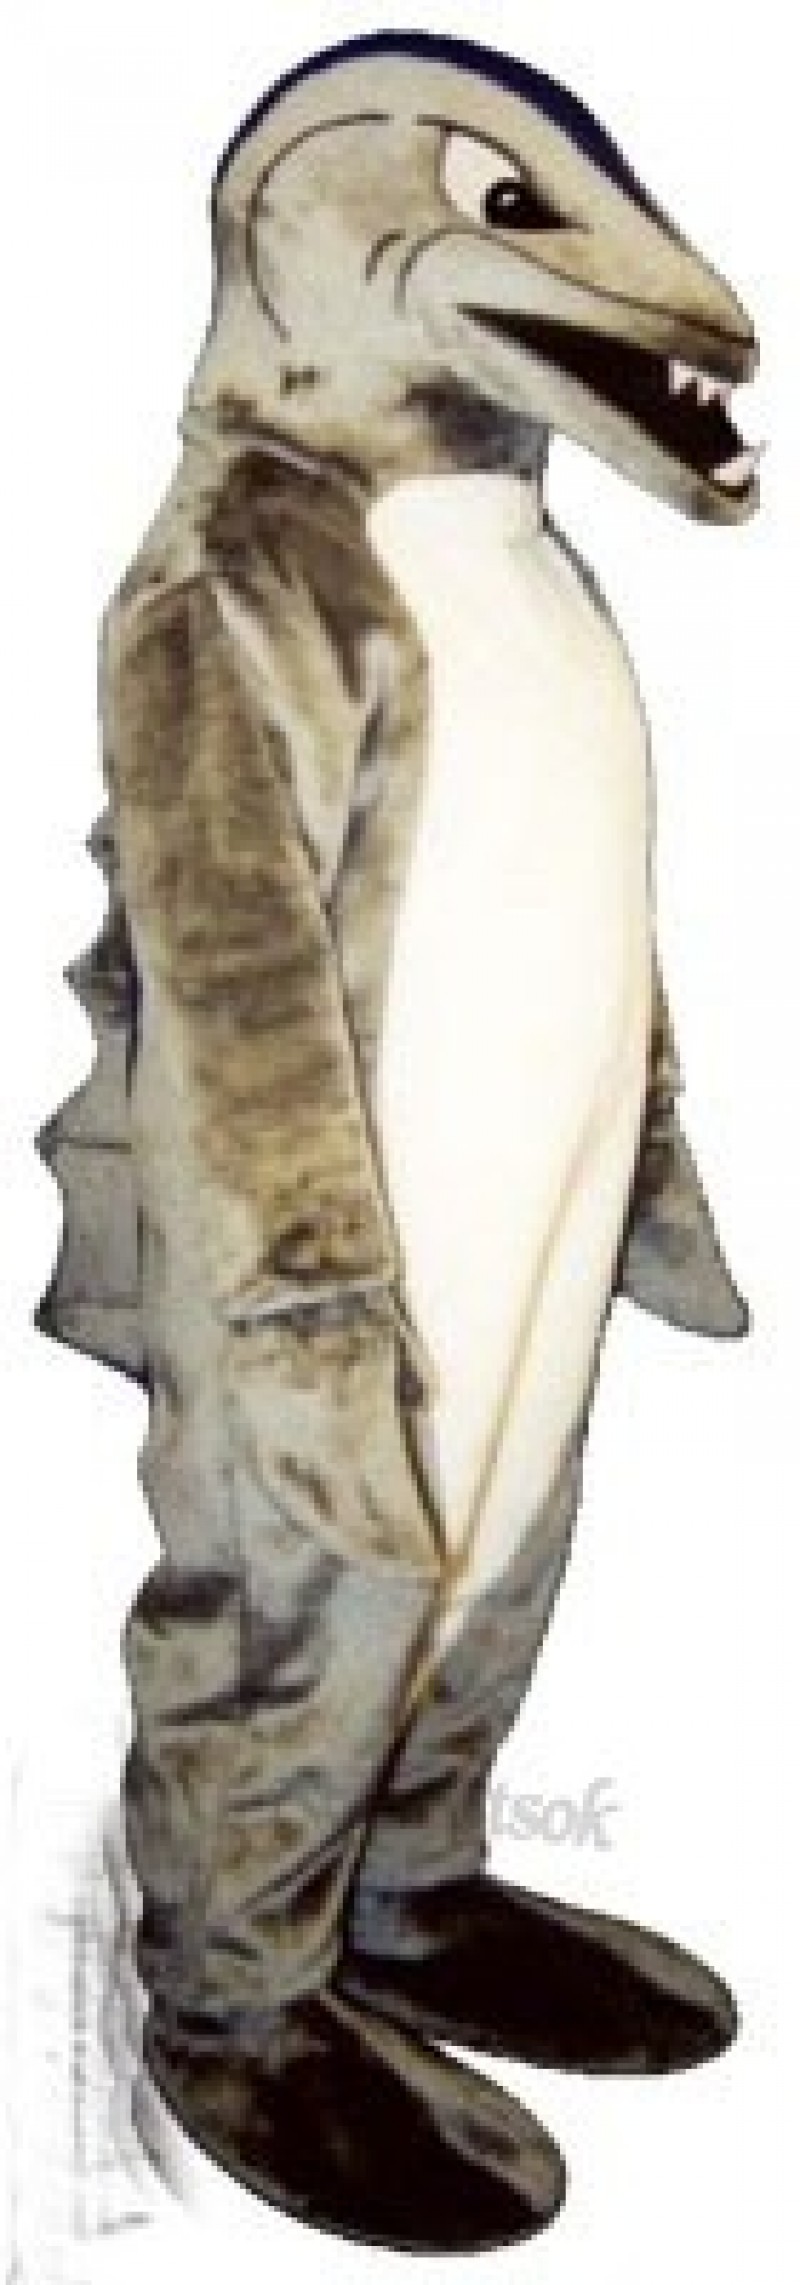 Cute Killer Shark Mascot Costume